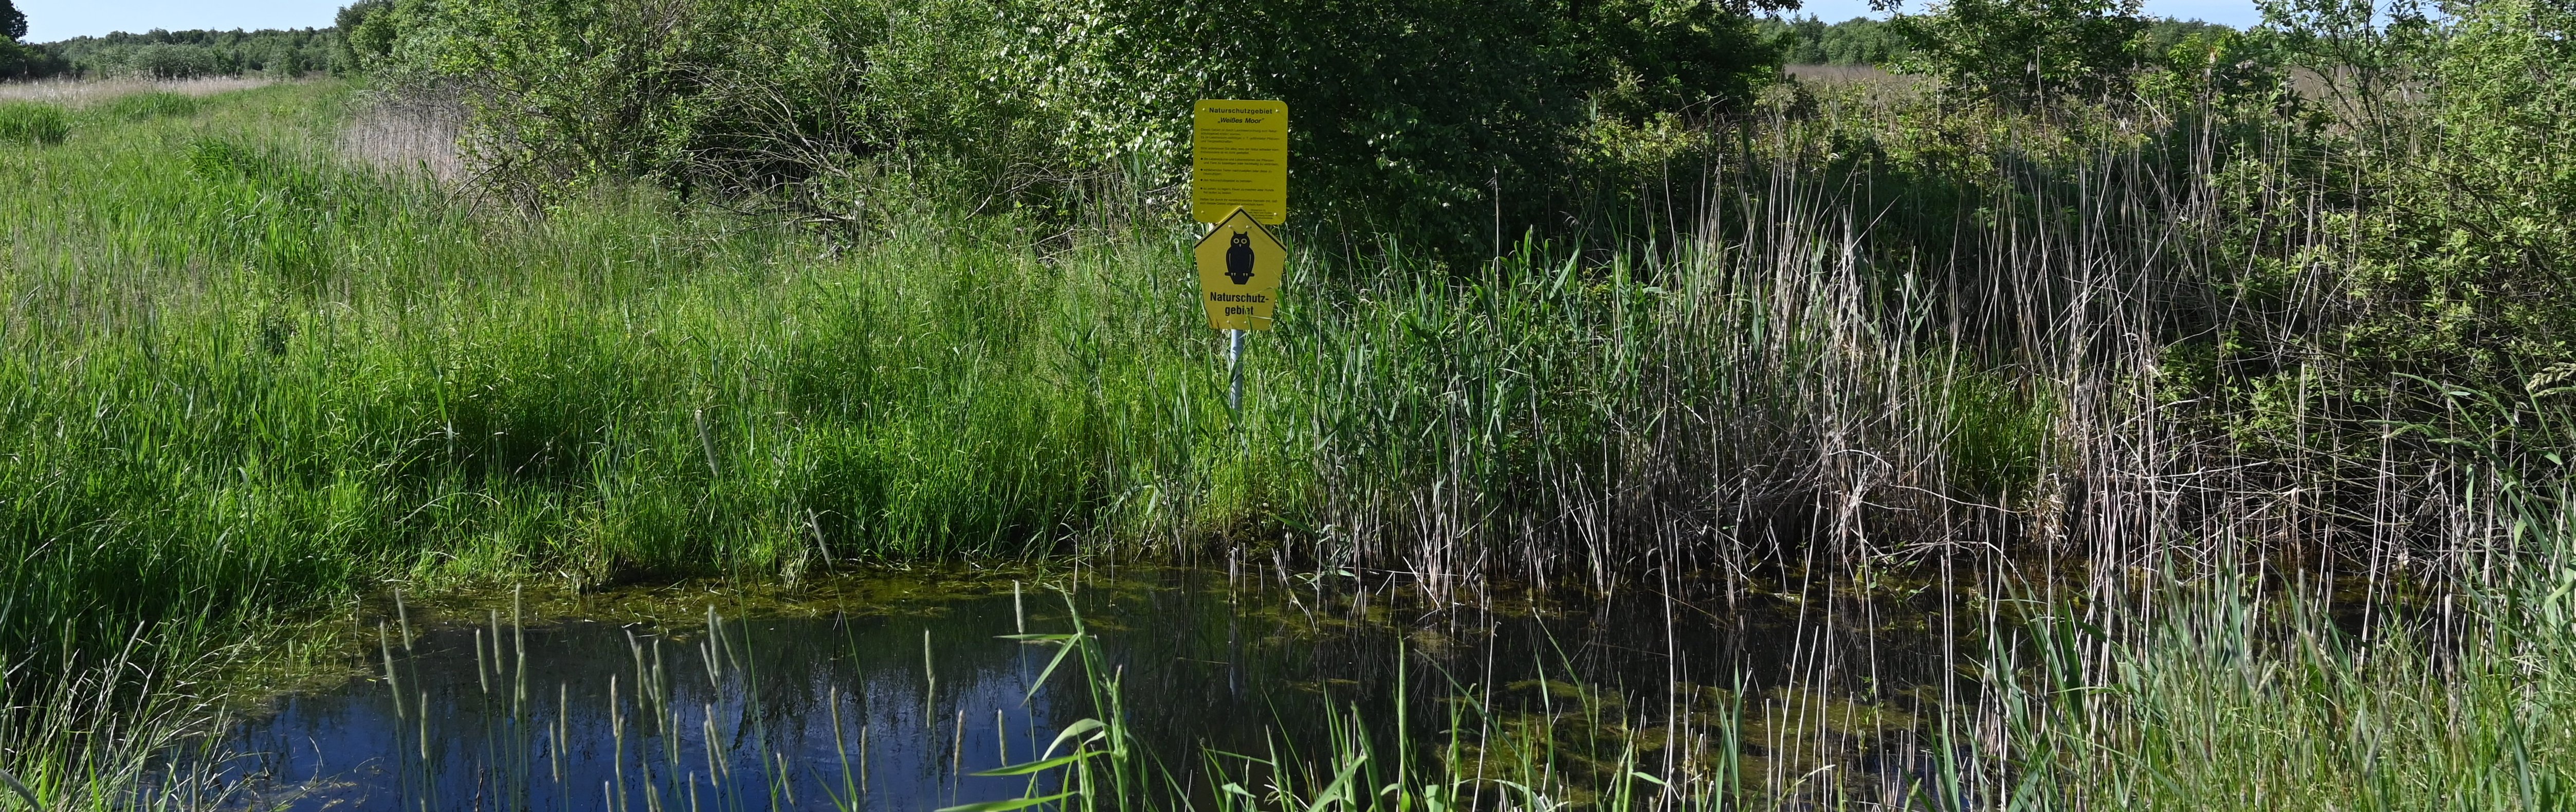 Ein Teich mit Schilfbewuchs am Ufer, umgeben von Büschen. Am gegenüberliegenden Ufer ein gelbes Schild mit der Aufschrift "Naturschutzgebiet".